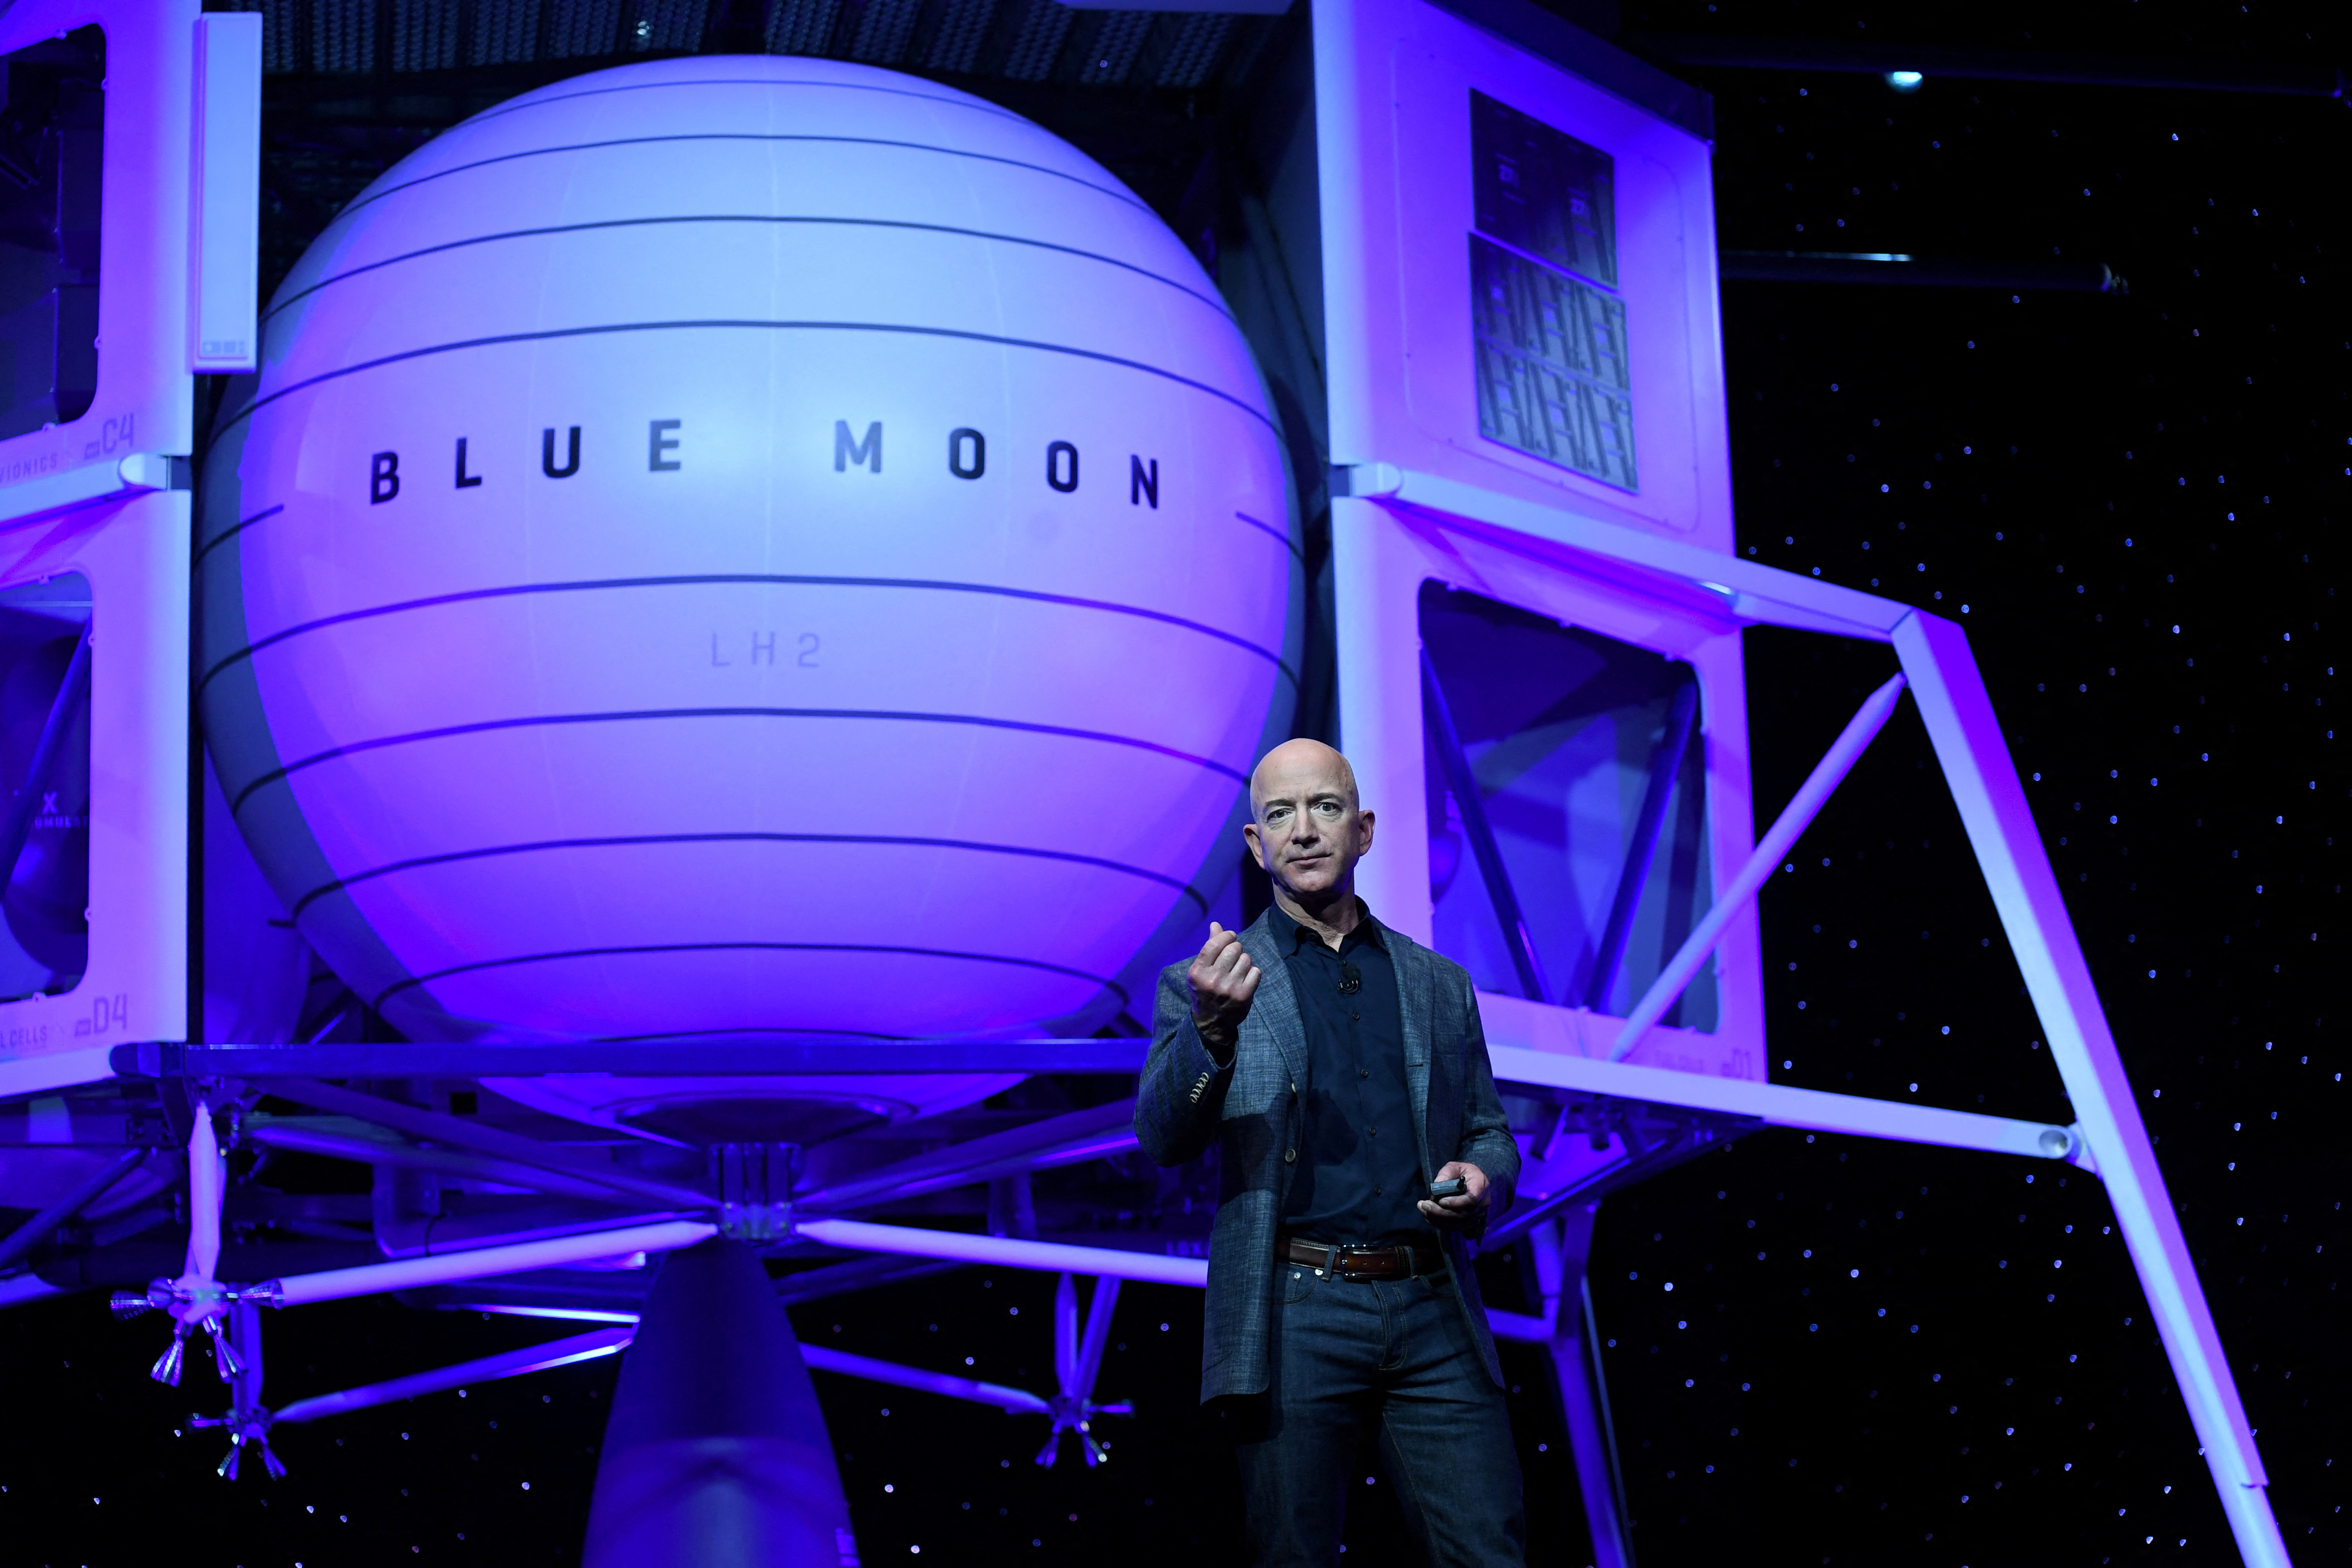 El fundador, presidente, director ejecutivo y presidente de Amazon, Jeff Bezos, presenta el cohete lunar de exploración espacial de su compañía espacial Blue Origin llamado Blue Moon en un evento de presentación en Washington.